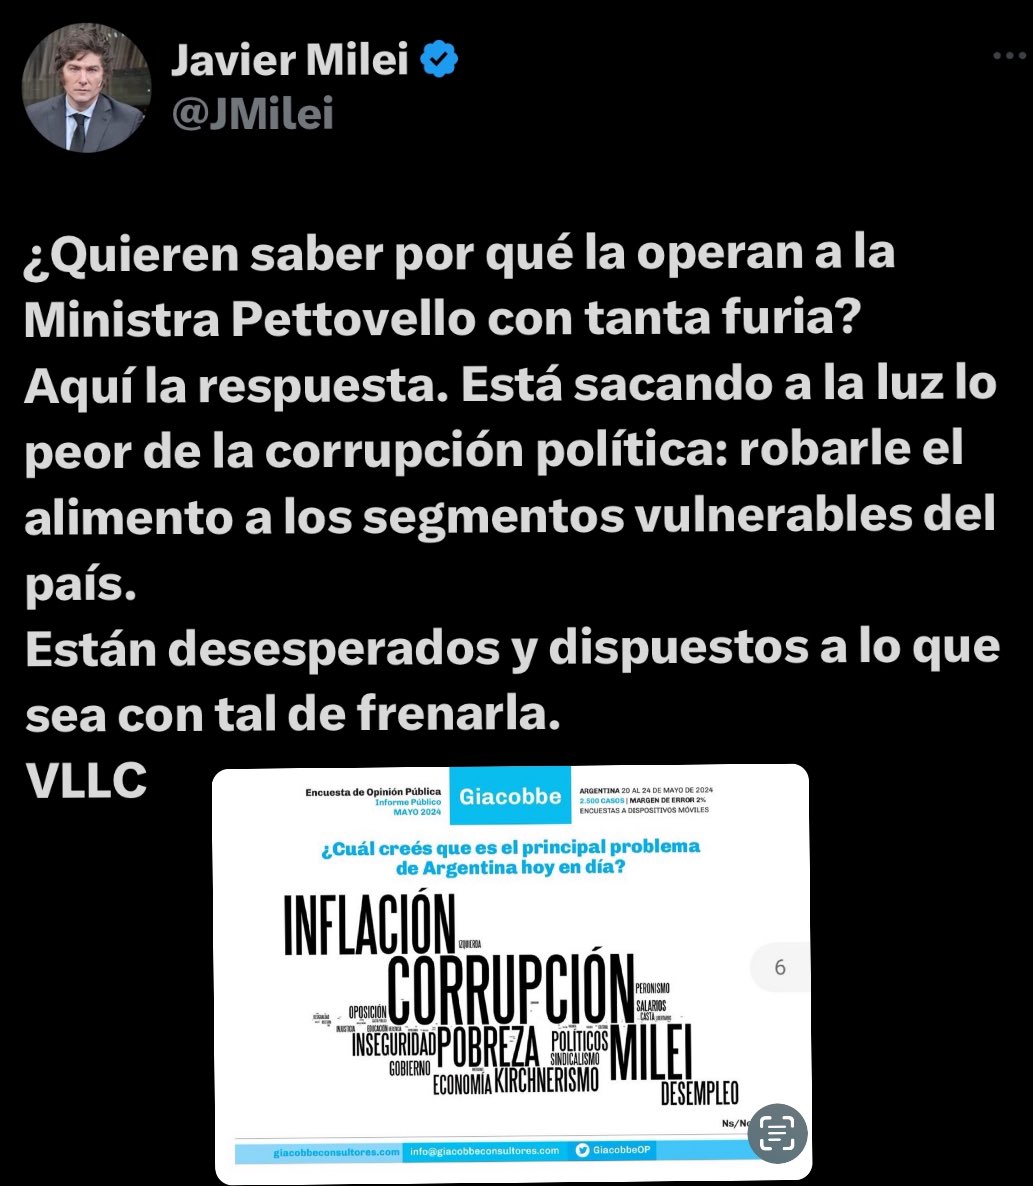 🚨 | Se les nota el miedo. Primera vez en la historia #Argentina un gobierno enfrenta la corrupción.
Fueron 20 años d saqueos a las arcas d los argentinos.
Quieren la cabeza d la ministro q los está denunciando.
Por eso operan a Pettovello con tanta furia.

#Milei no come vidrio.